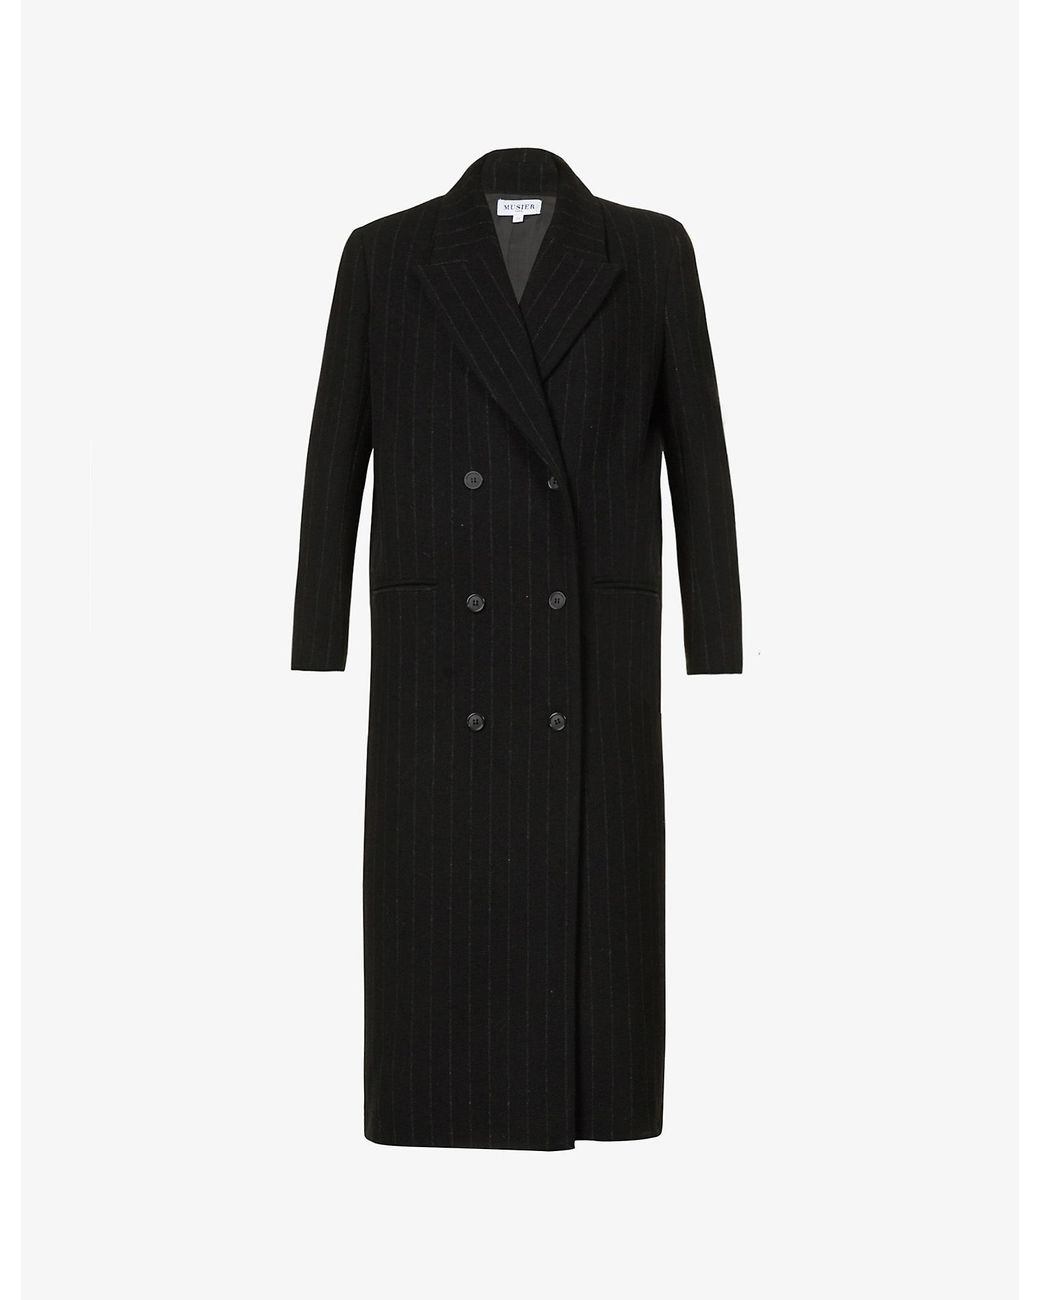 Musier Paris Paula Stripe-print Wool-blend Coat in Black | Lyst